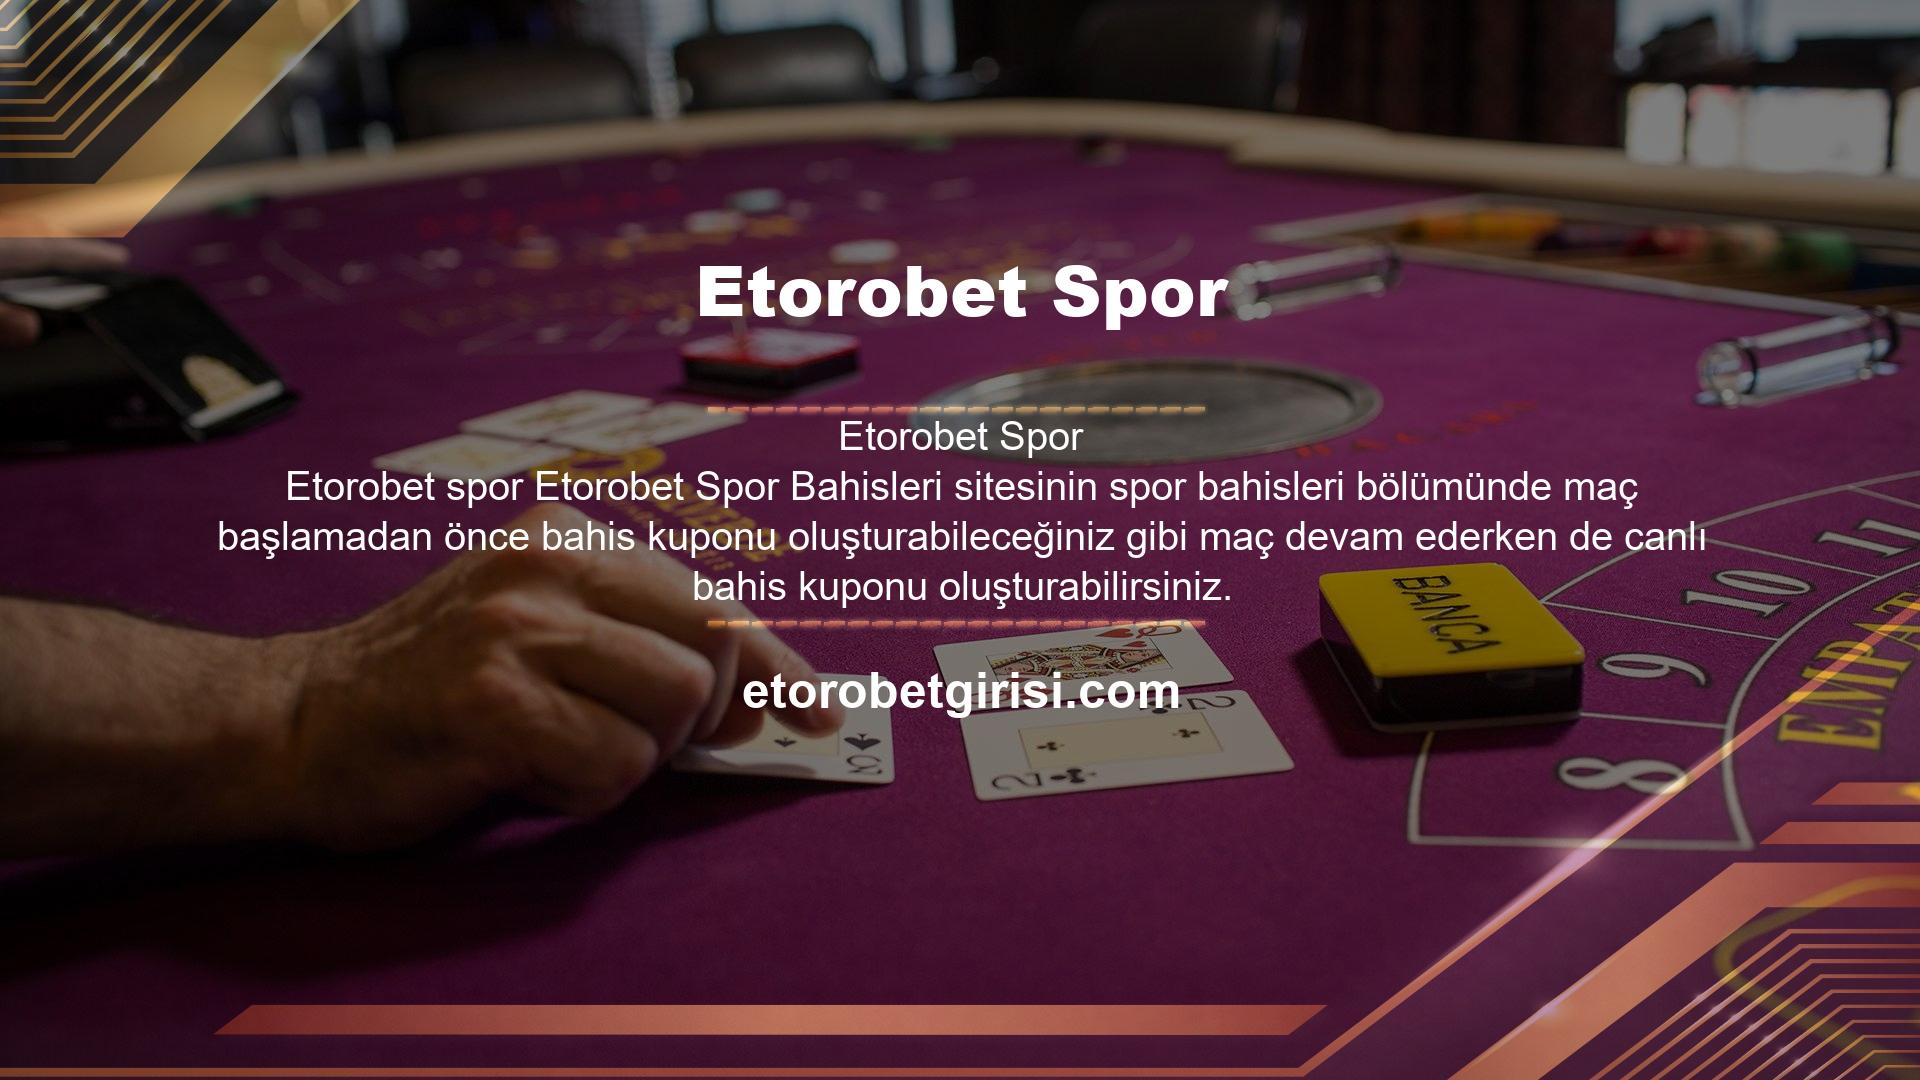 Etorobet online canlı bahis sitesi, oyunculara diğer bahis sitelerine göre daha yüksek oranlar ve daha kapsamlı bahis seçenekleri sunan bahissiz bahis fonksiyonu olan canlı bahis altyapısına sahiptir